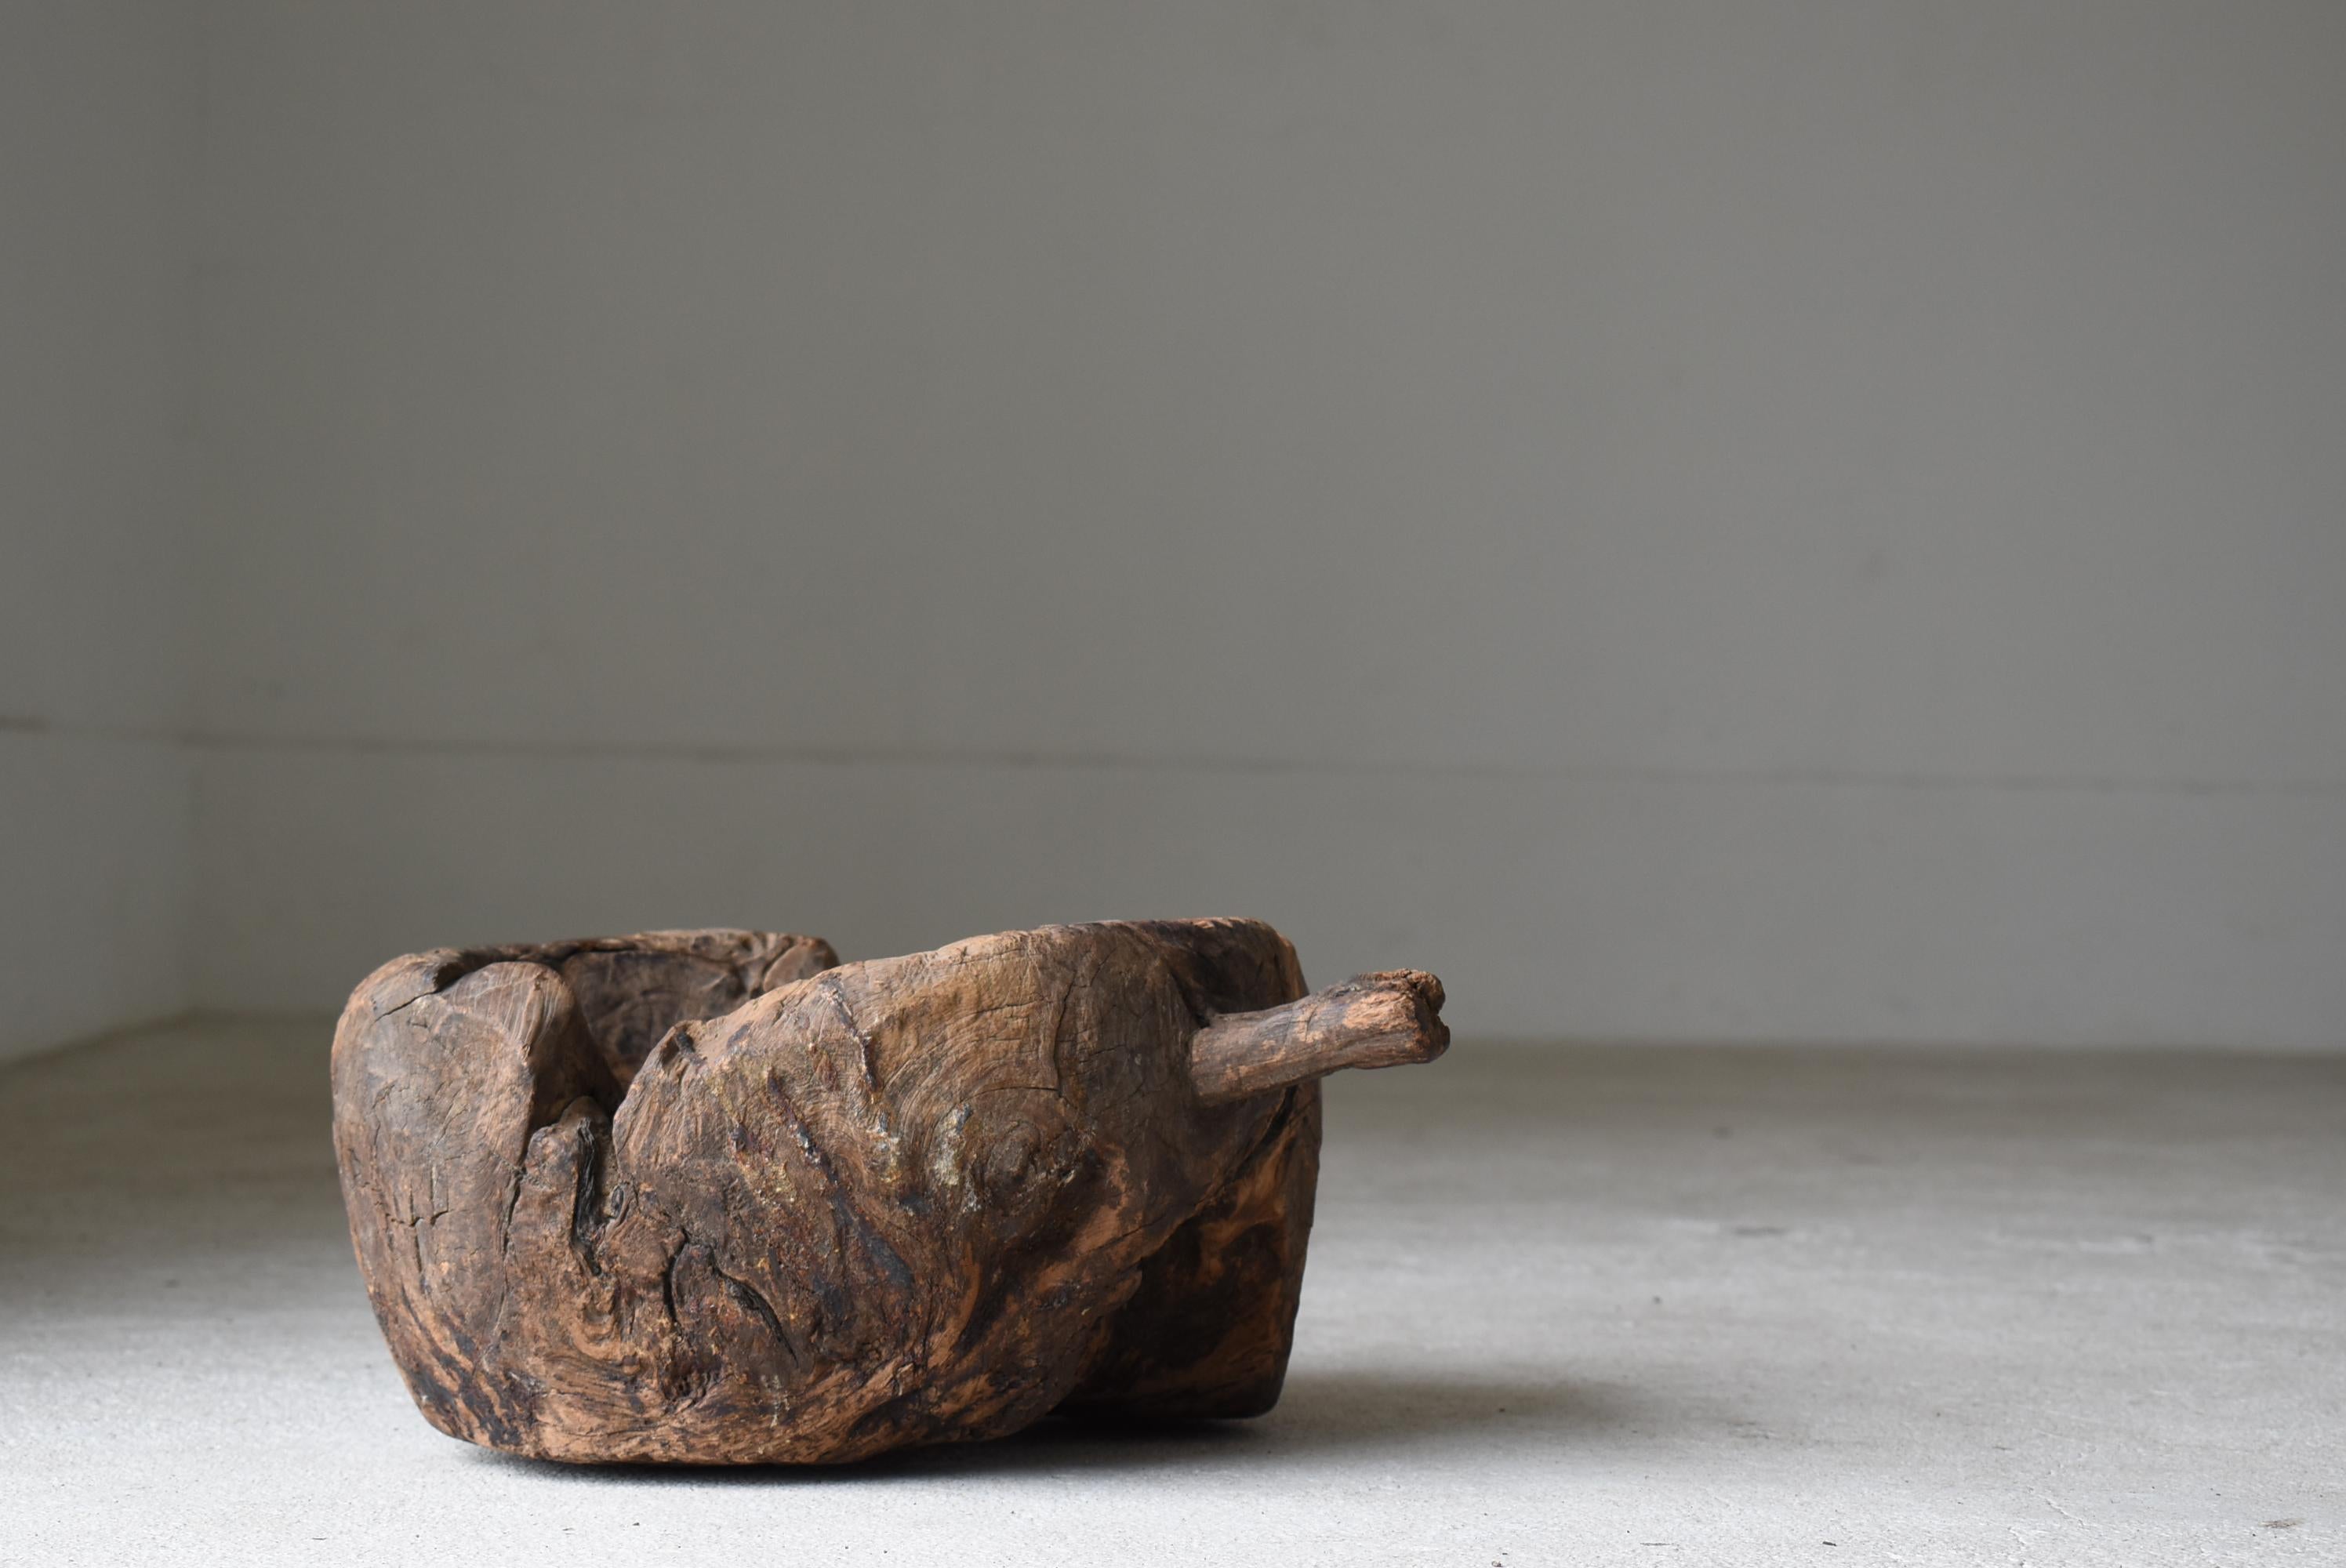 Old Wooden Mortar One Knife Carving/Antique Primitive Bowl Mingei Folk Art For Sale 12